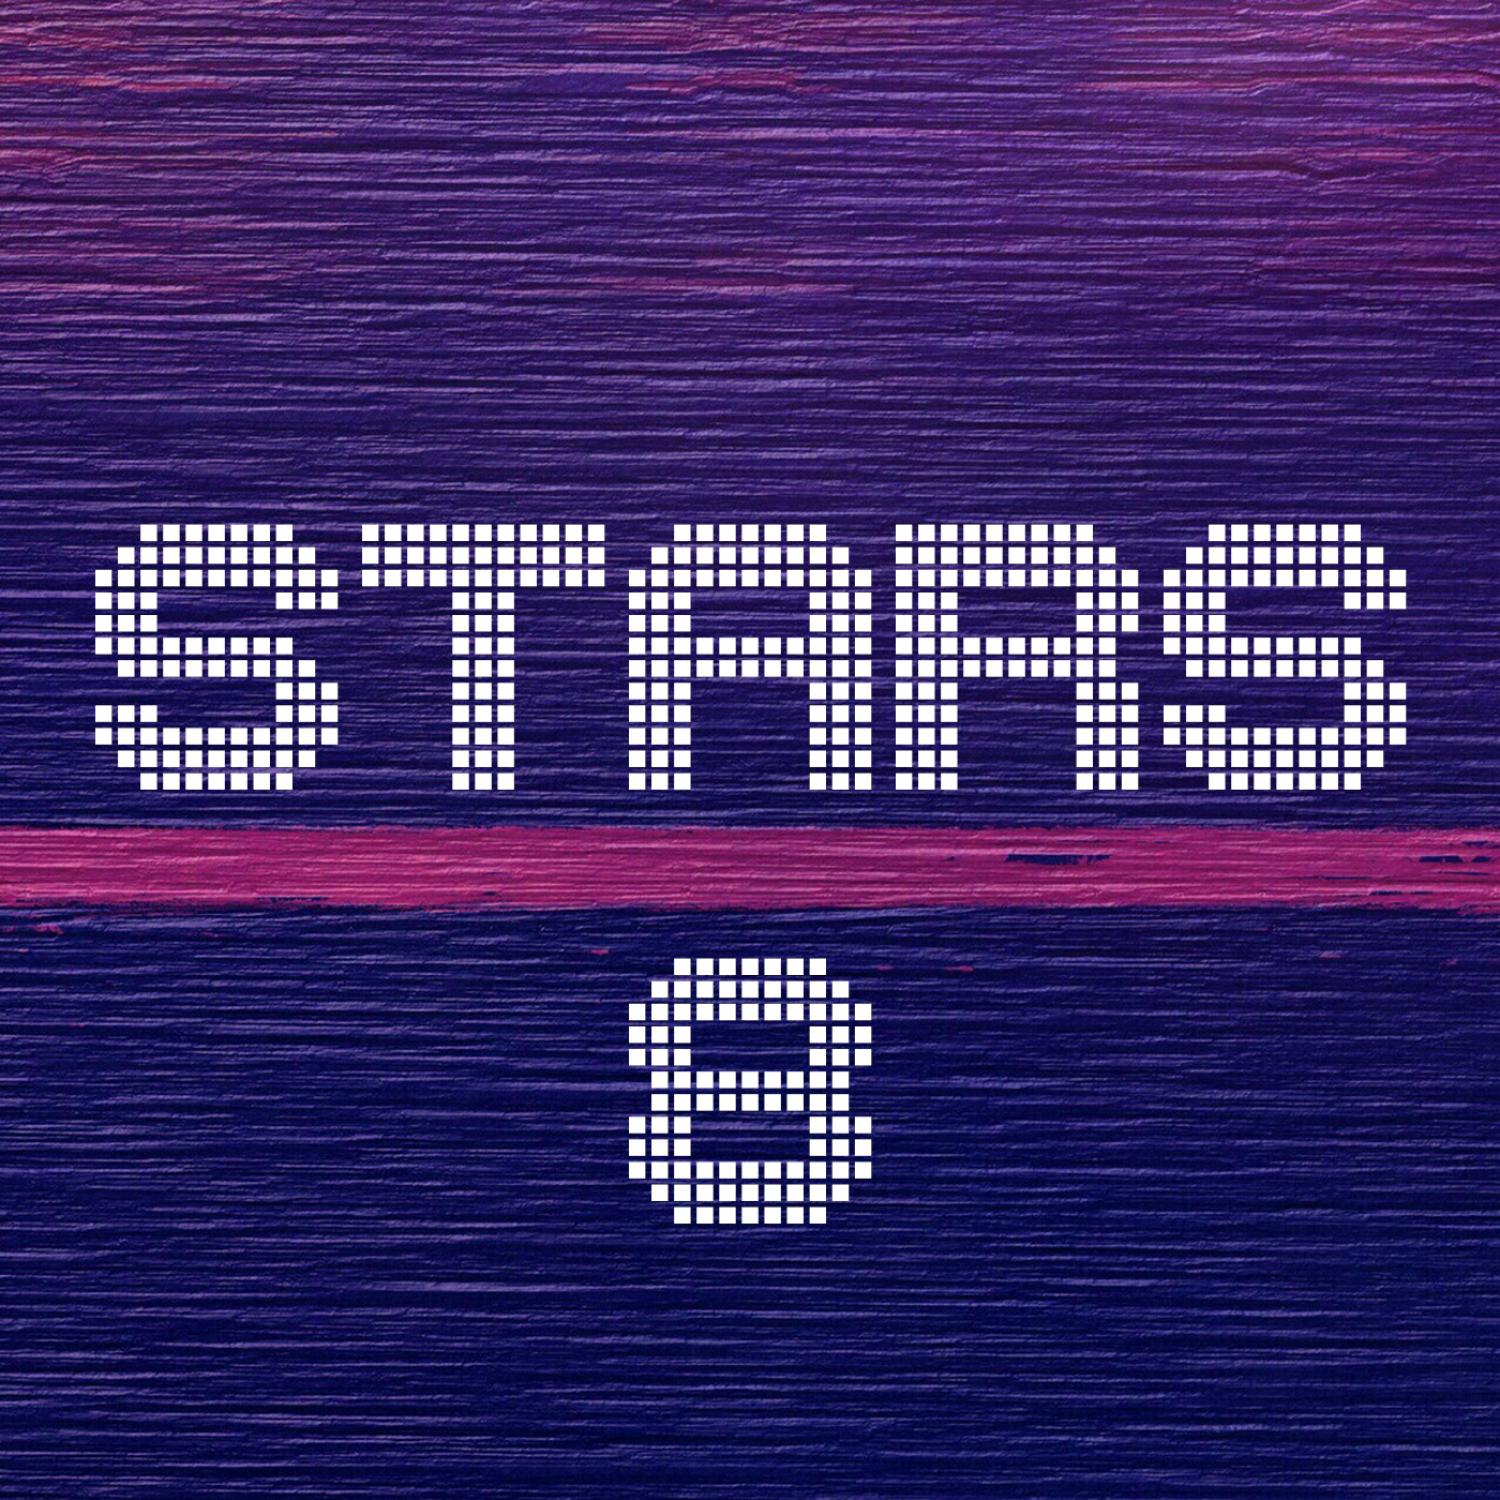 Постер альбома Stars, Vol. 8